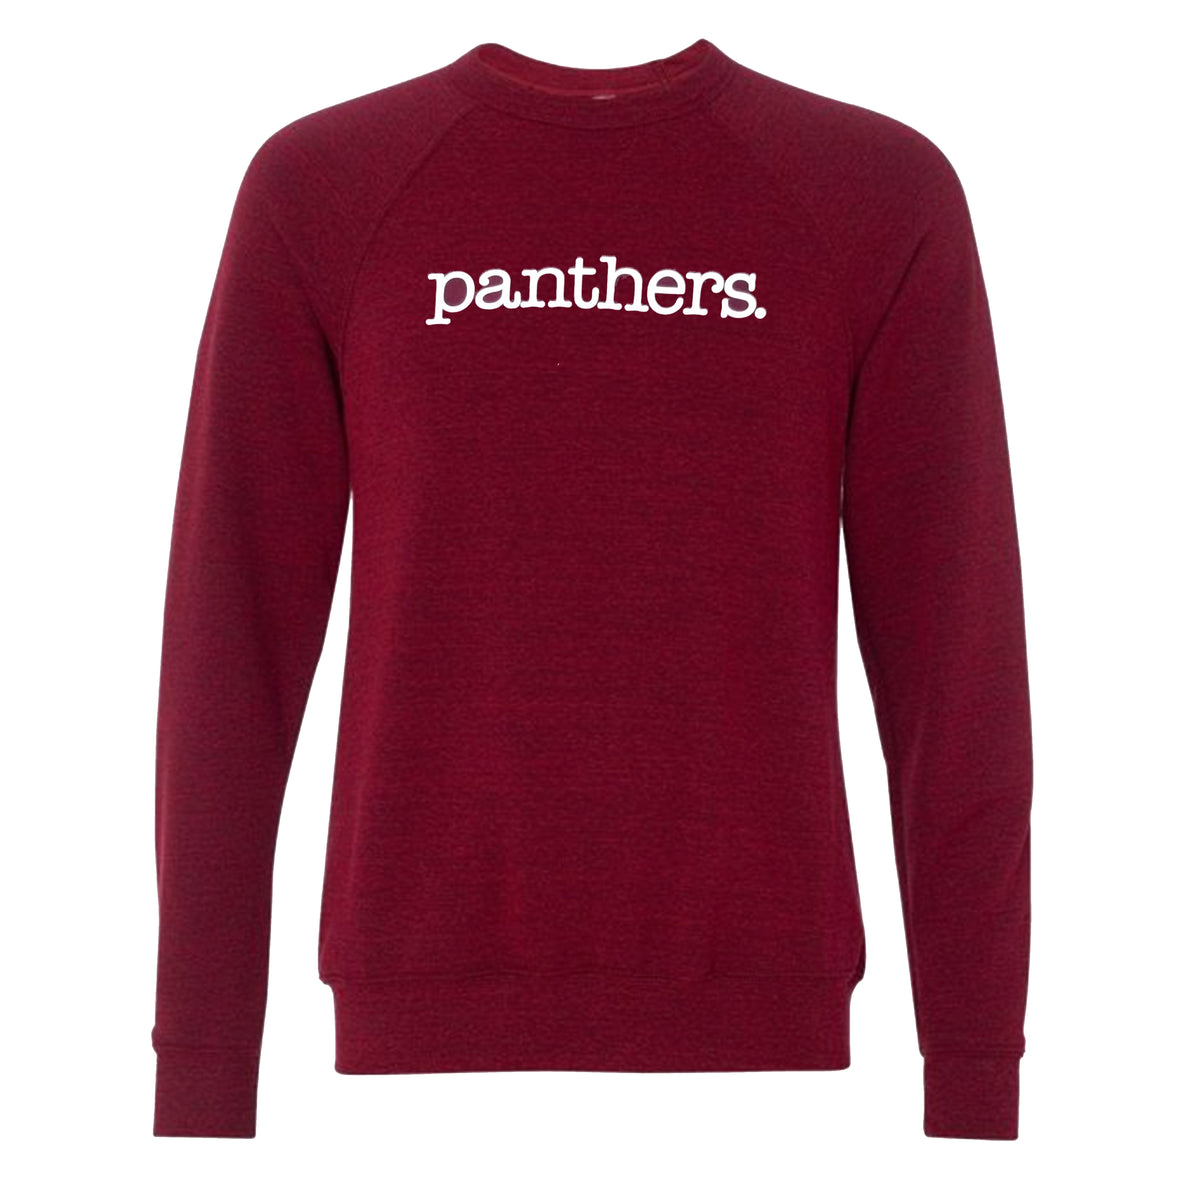 Benton Panthers. sweatshirt